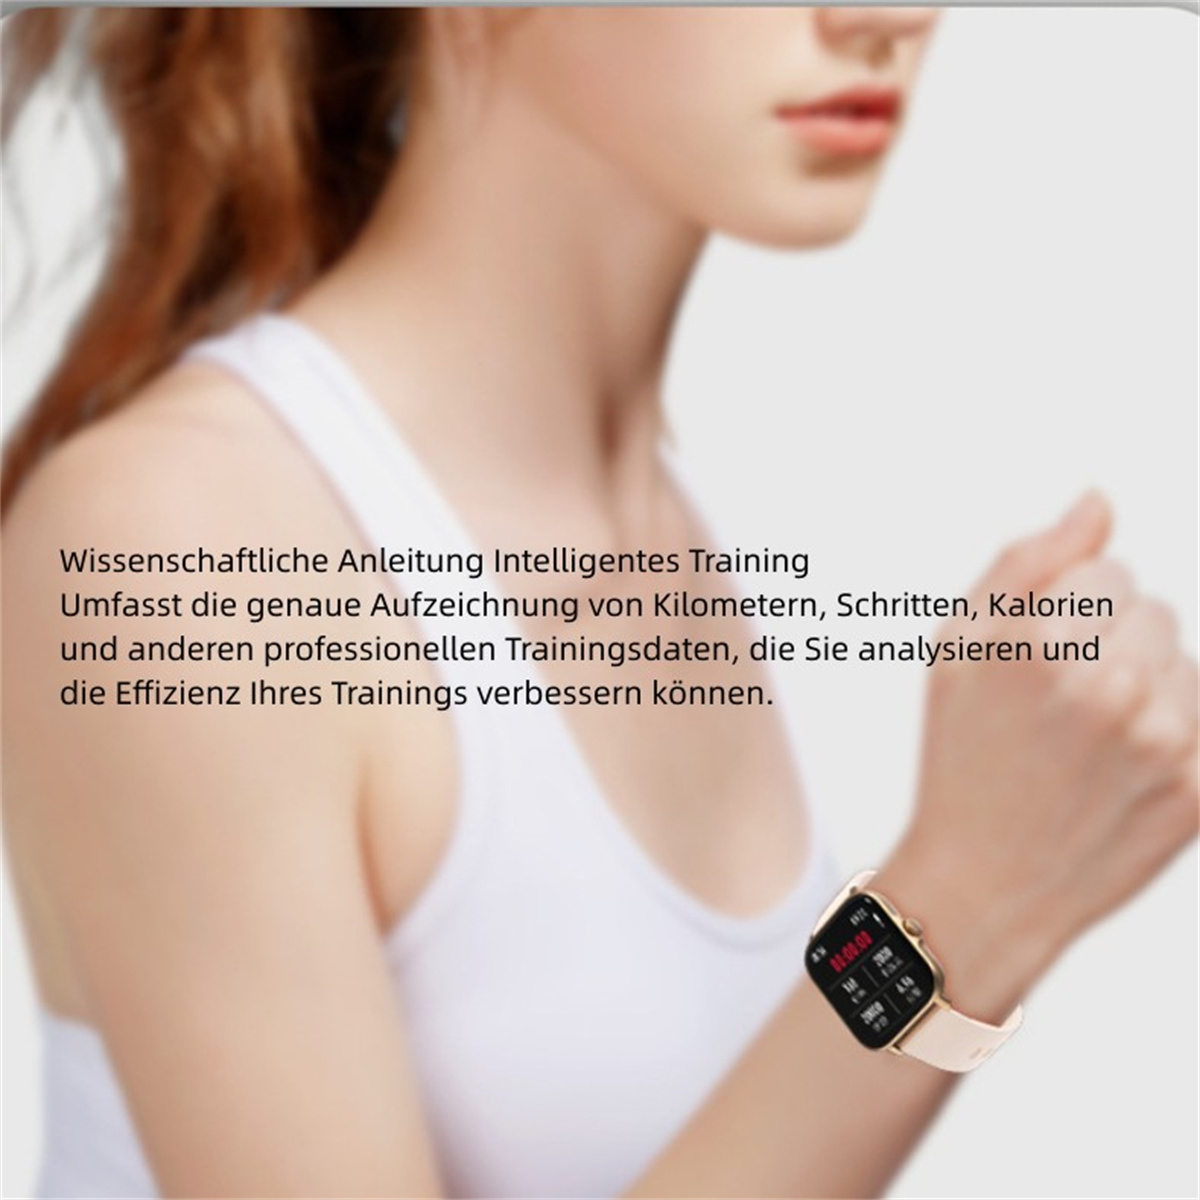 Gold Bluetooth BRIGHTAKE Sportarmband Smartwatch sprechende Herzfrequenz Smart Silber Gesundheitsüberwachung Uhr Watch Leder,